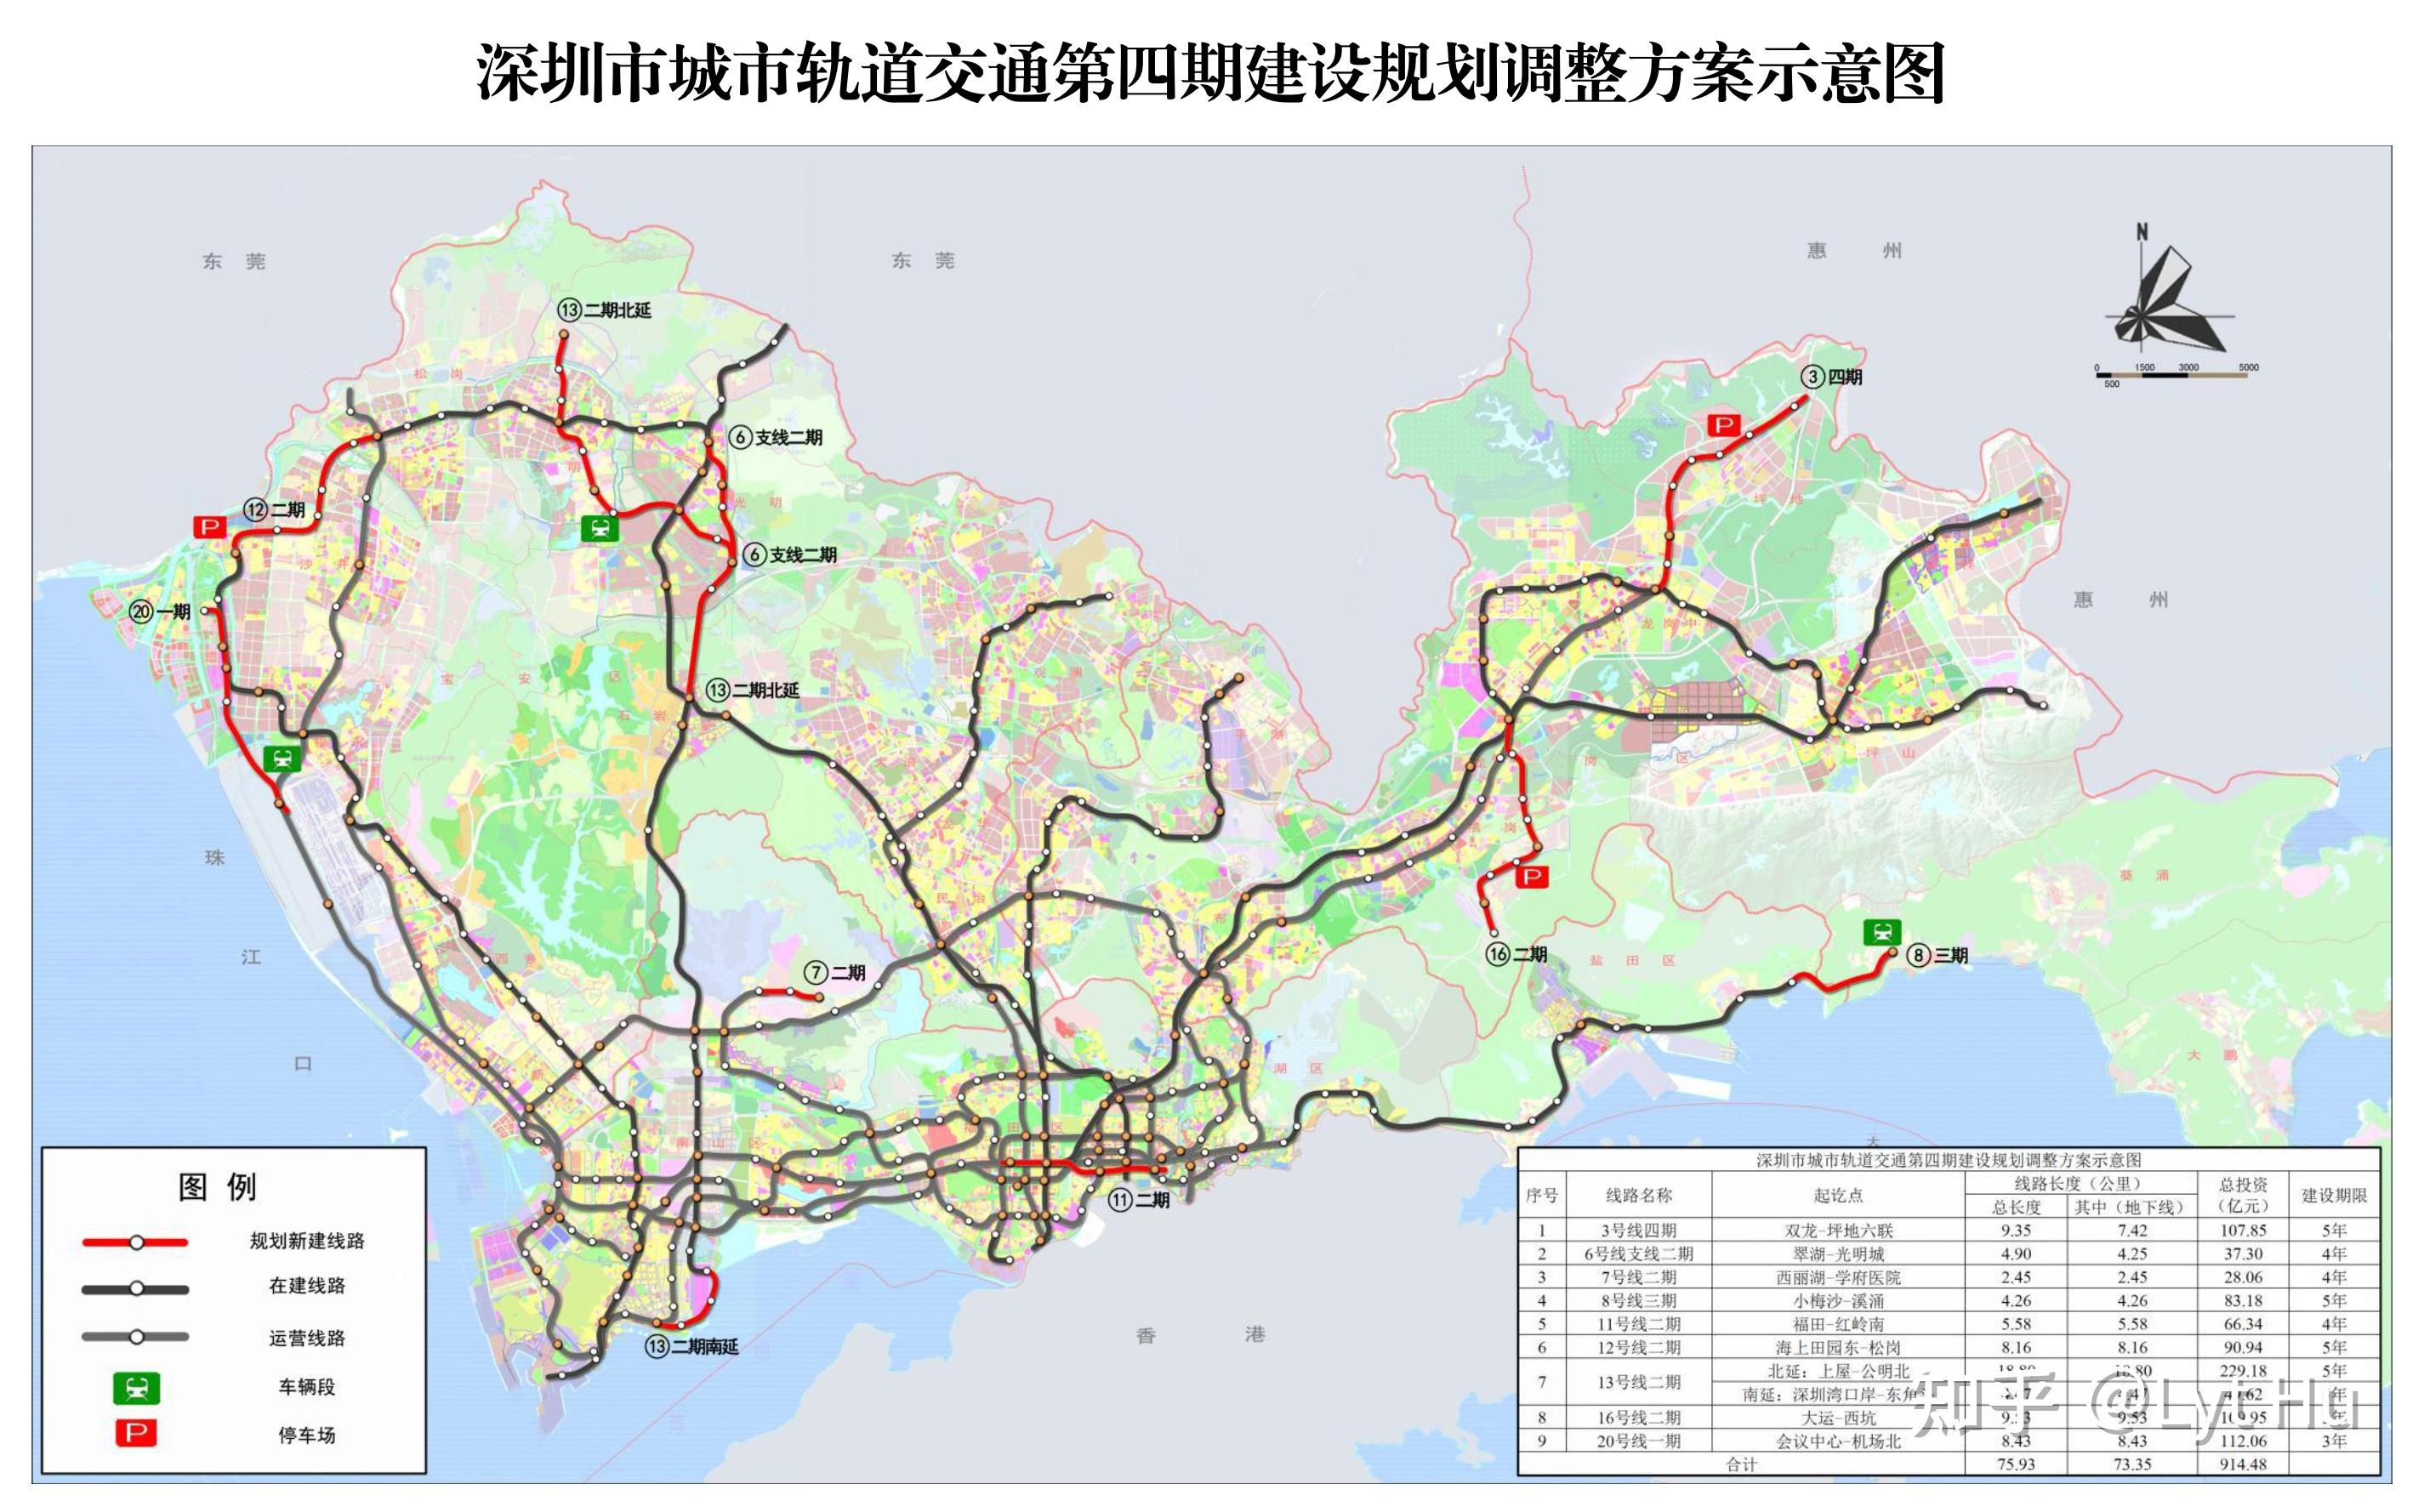 深圳轨道交通图 2021 / 2025 designed by lyt预计2025年线路图规模